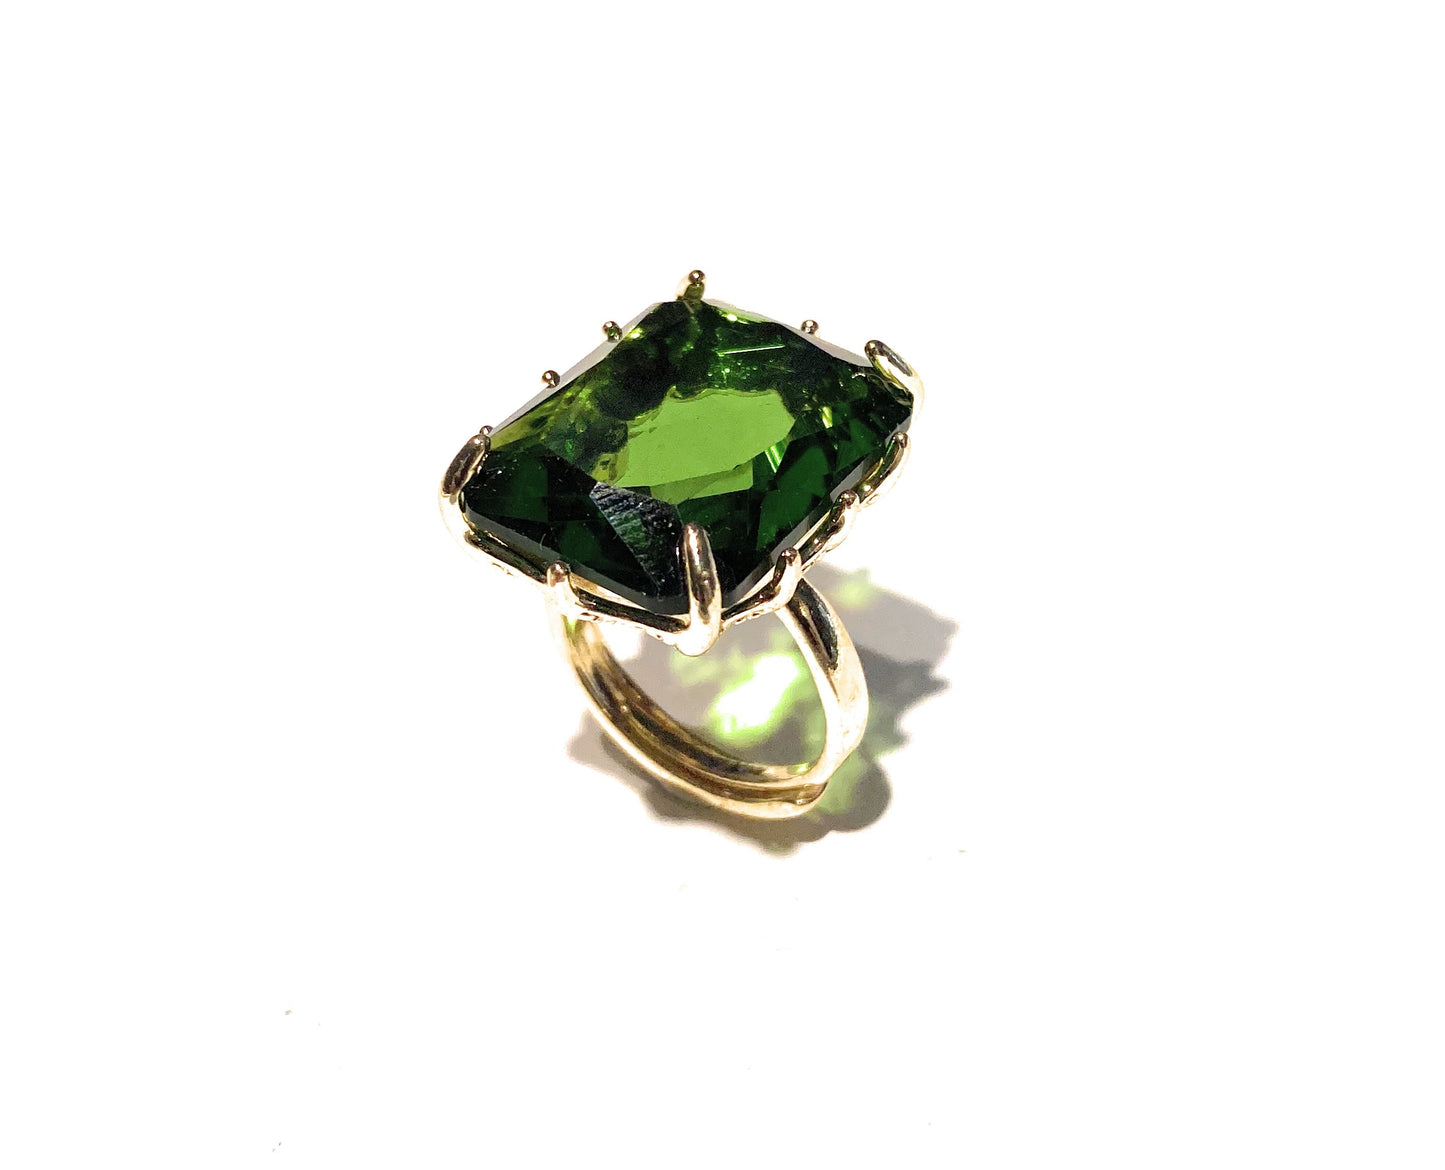 Anello bronzo cristallo taglio smeraldo vari colori regolabile placcato oro giallo